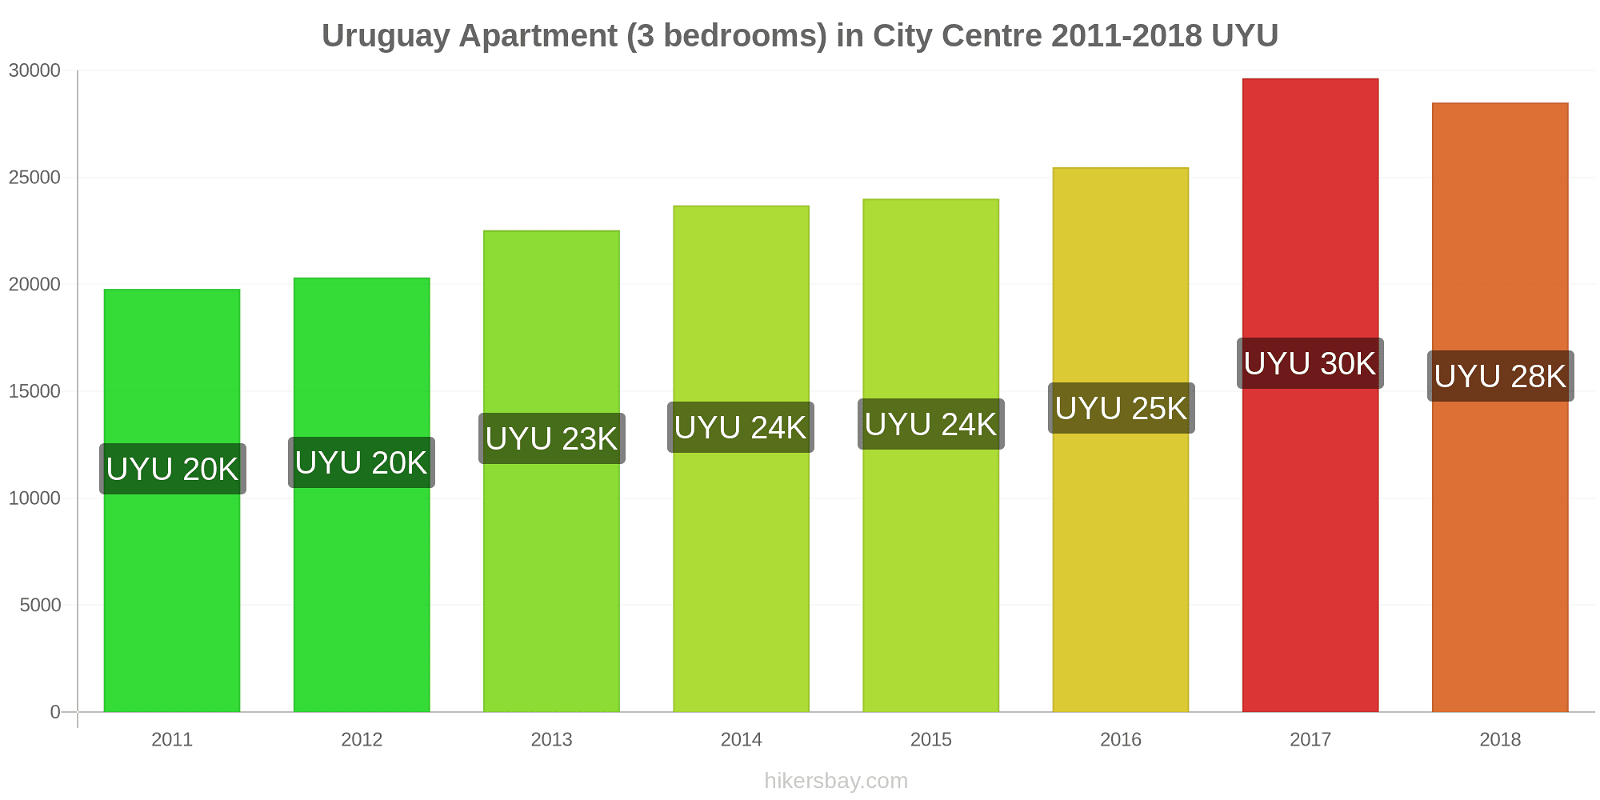 Uruguay price changes Apartment (3 bedrooms) in City Centre hikersbay.com